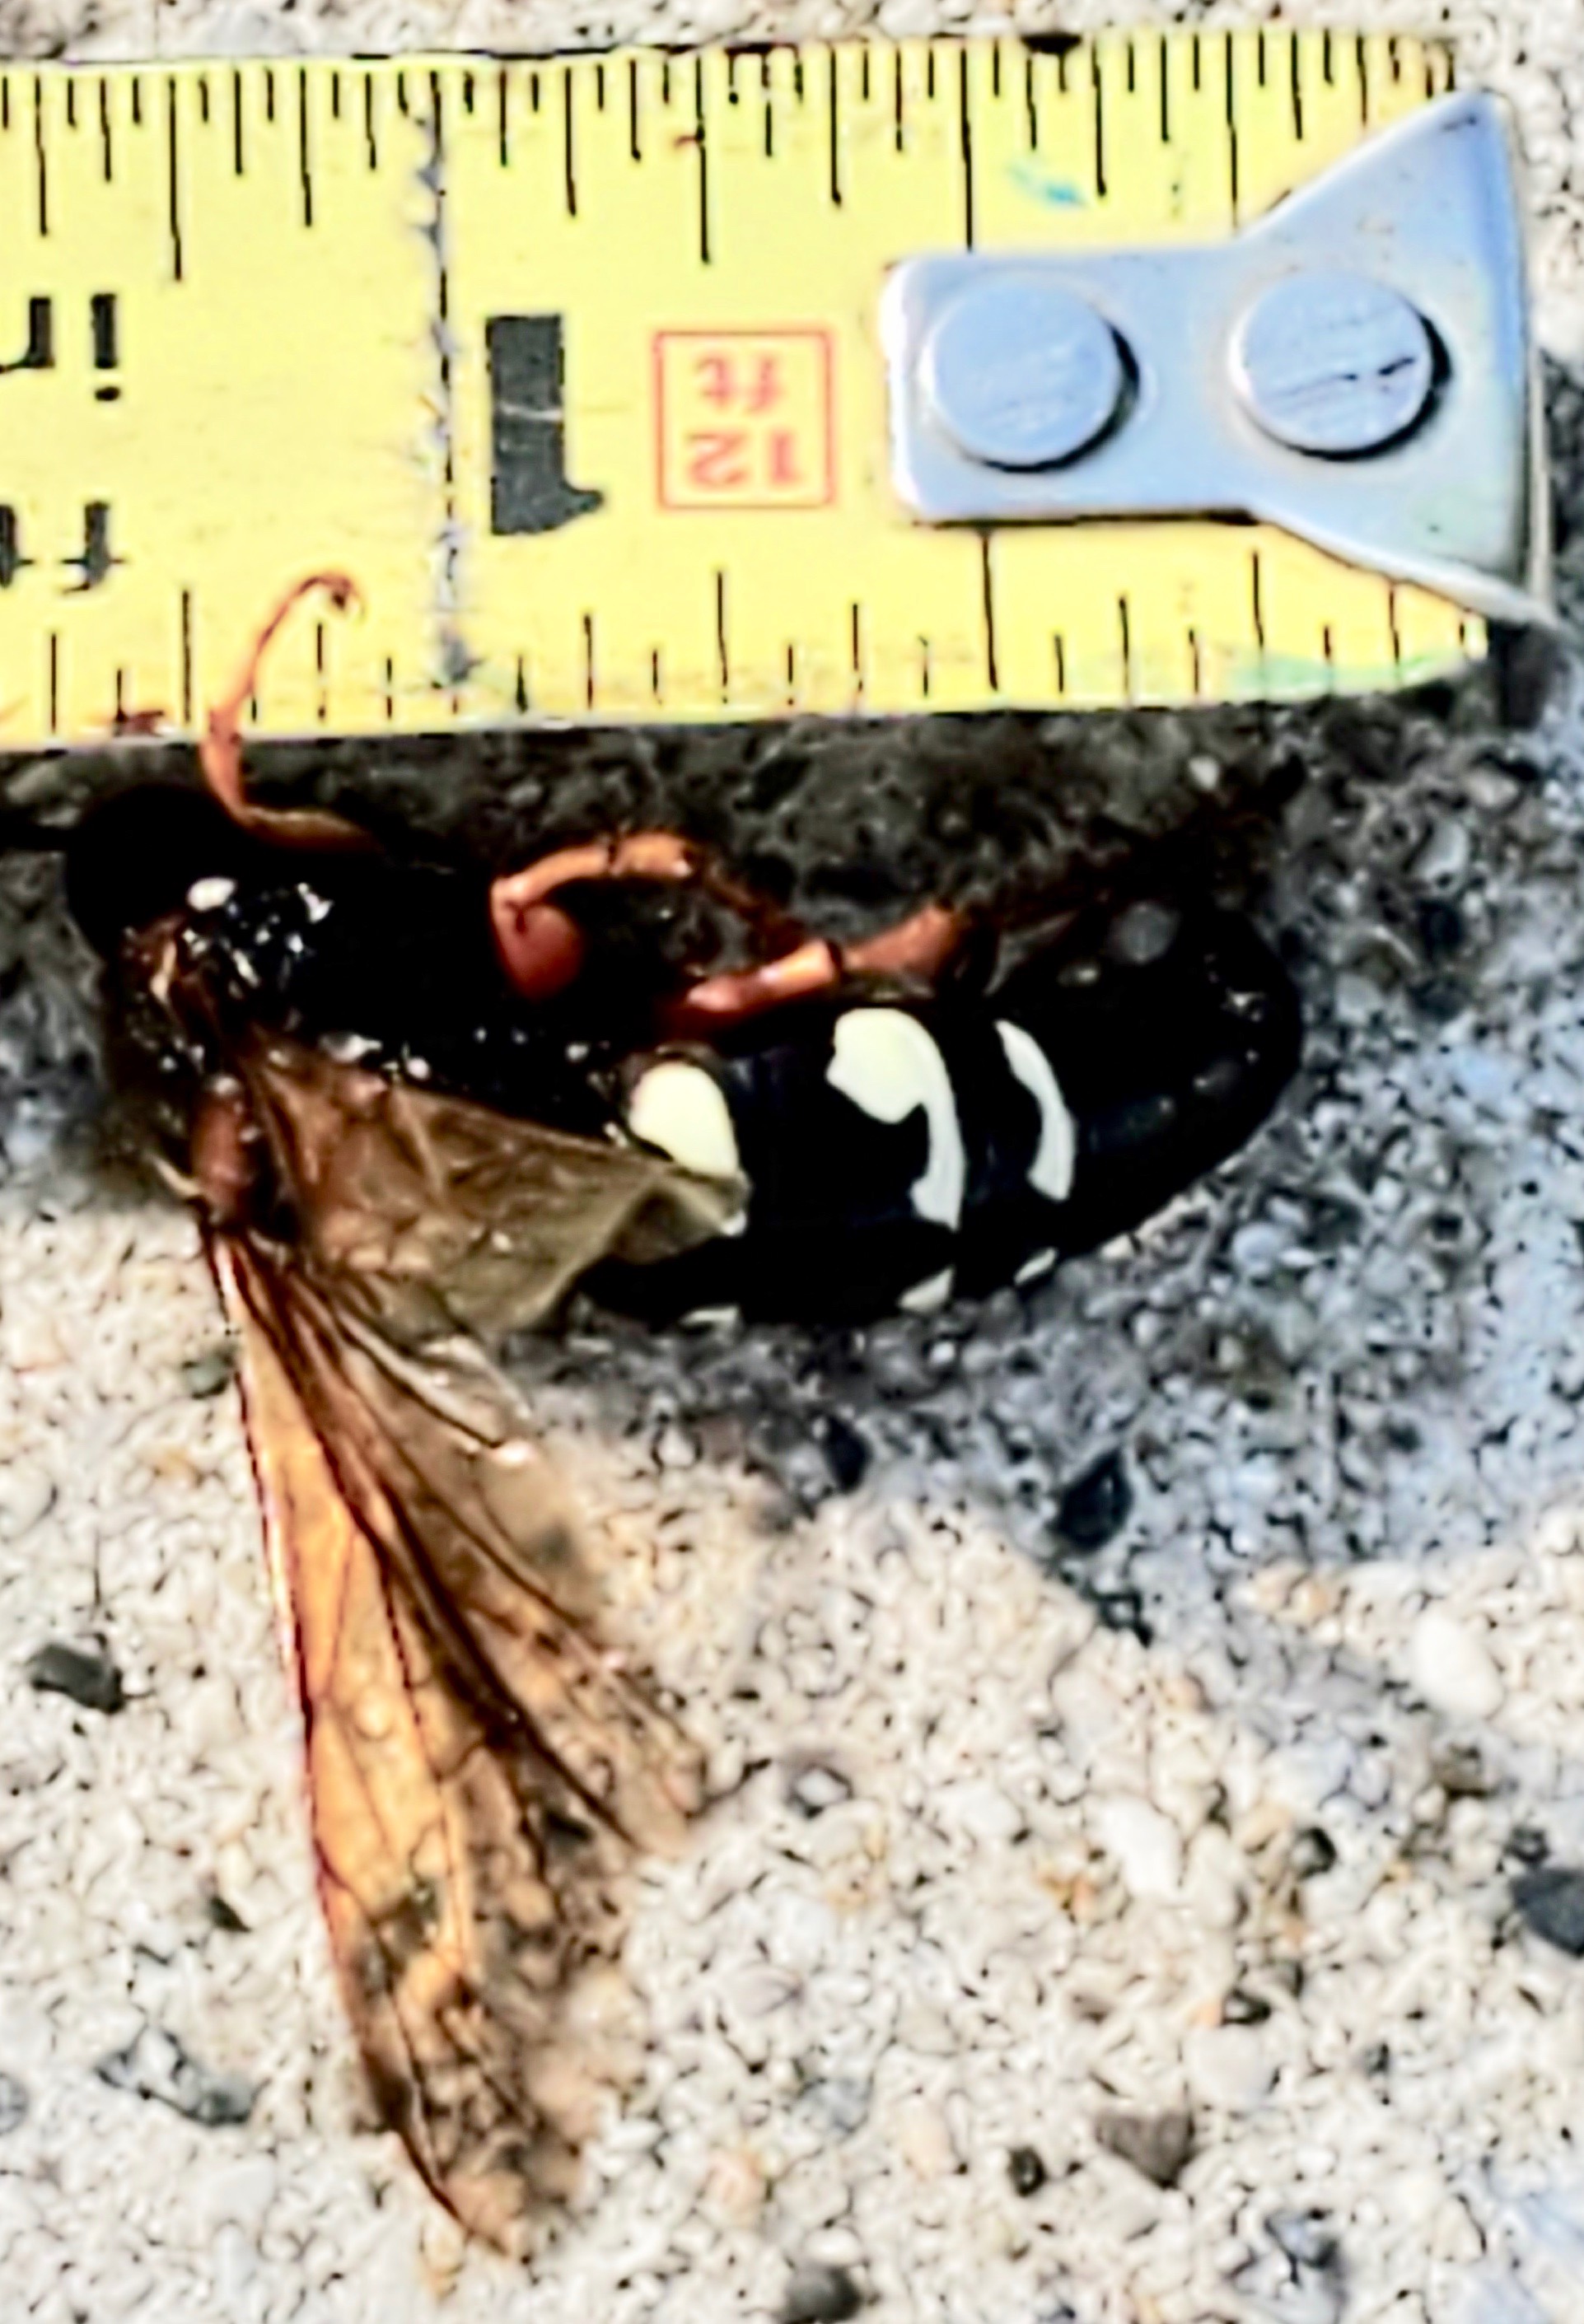 Eastern cicada killer (Sphecius speciosus)